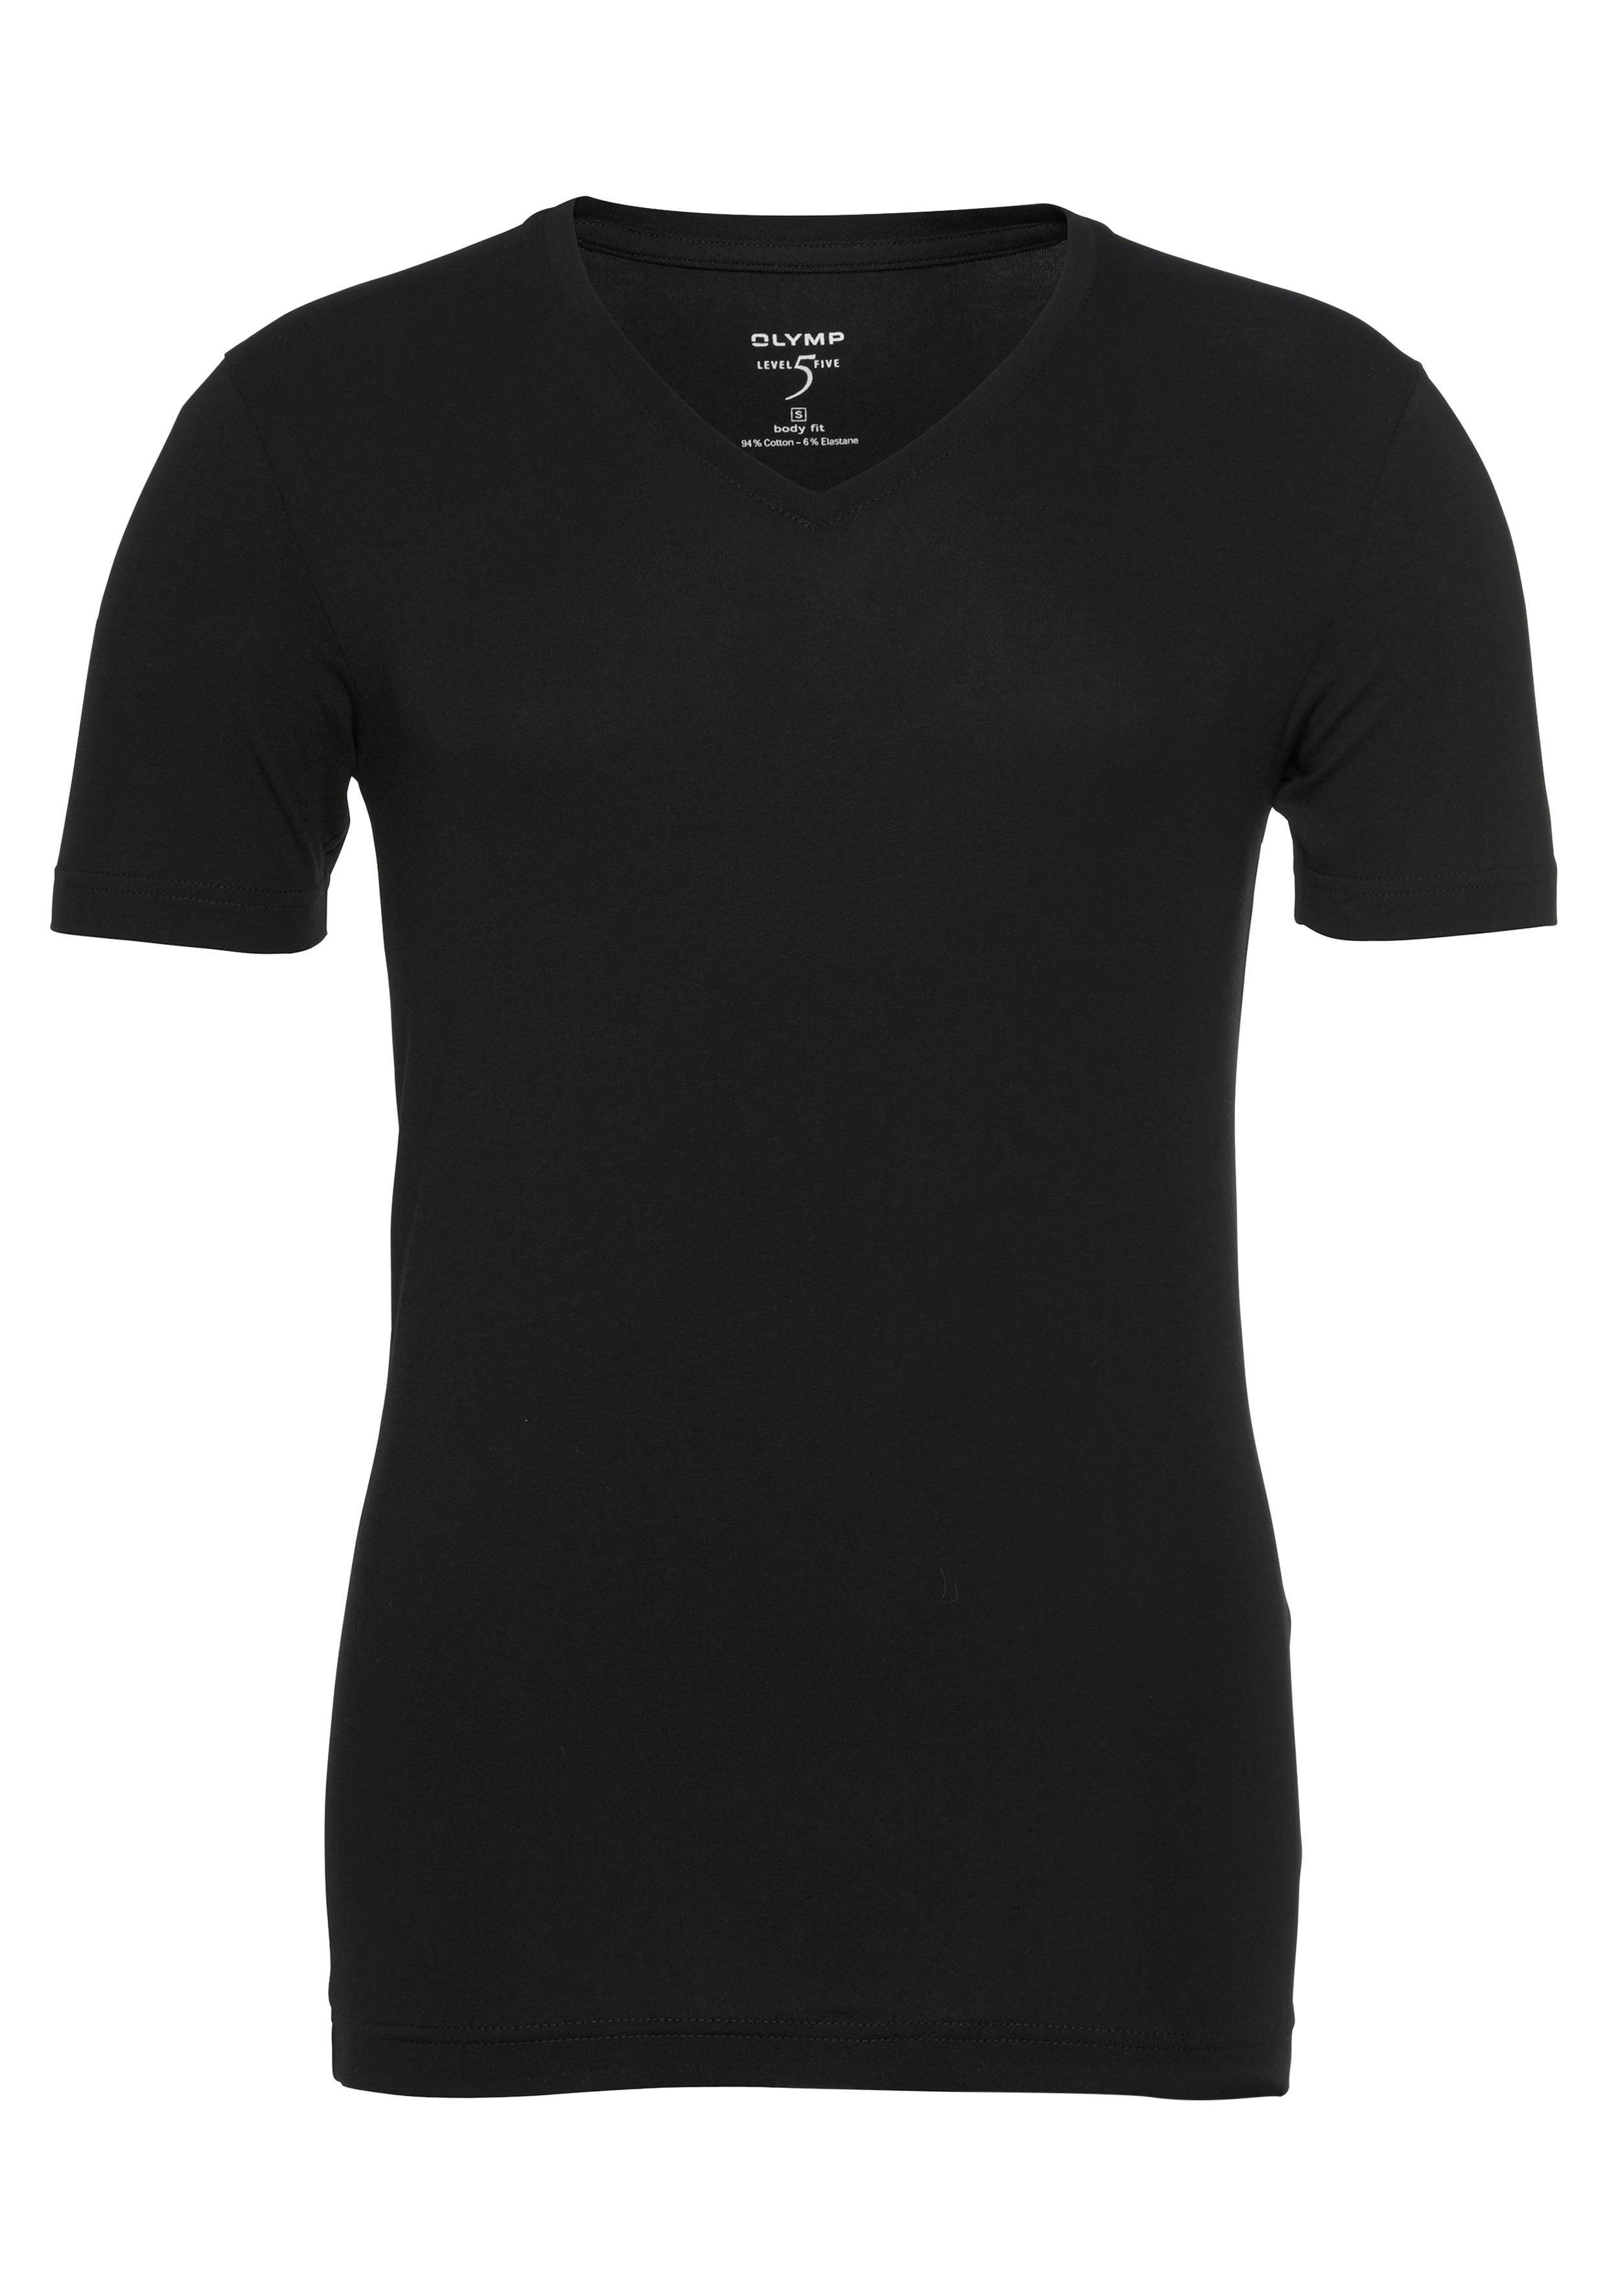 schwarz Ideal V-Ausschnitt, fit Level body OLYMP Unterziehen Five zum T-Shirt